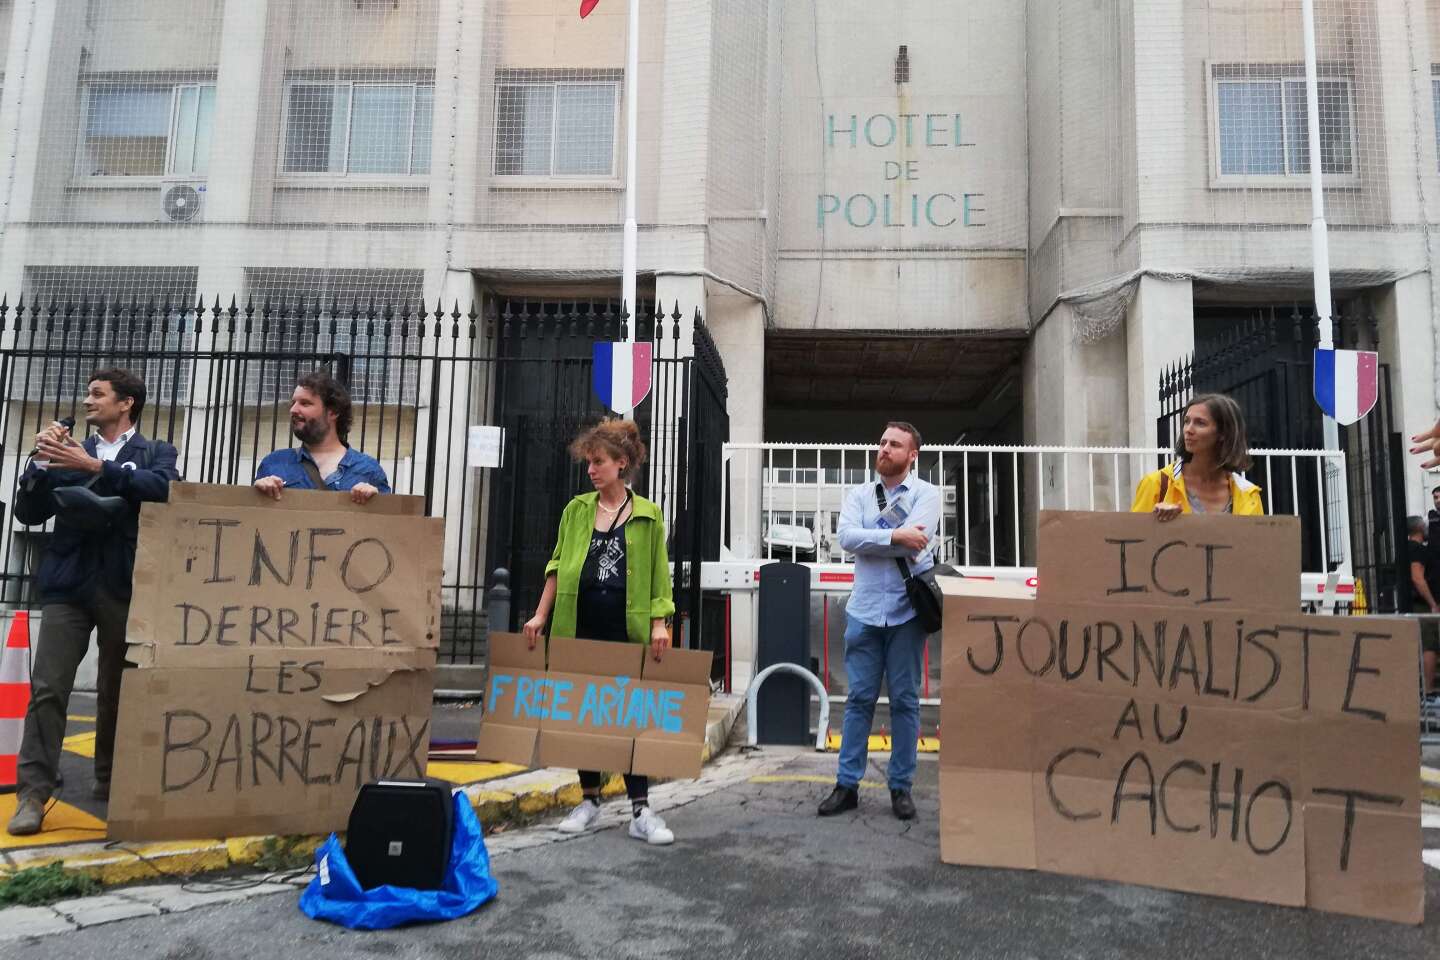 Ariane Lavrilleux en garde à vue : « L’exercice même du métier de journaliste est en péril », alertent des sociétés de journalistes